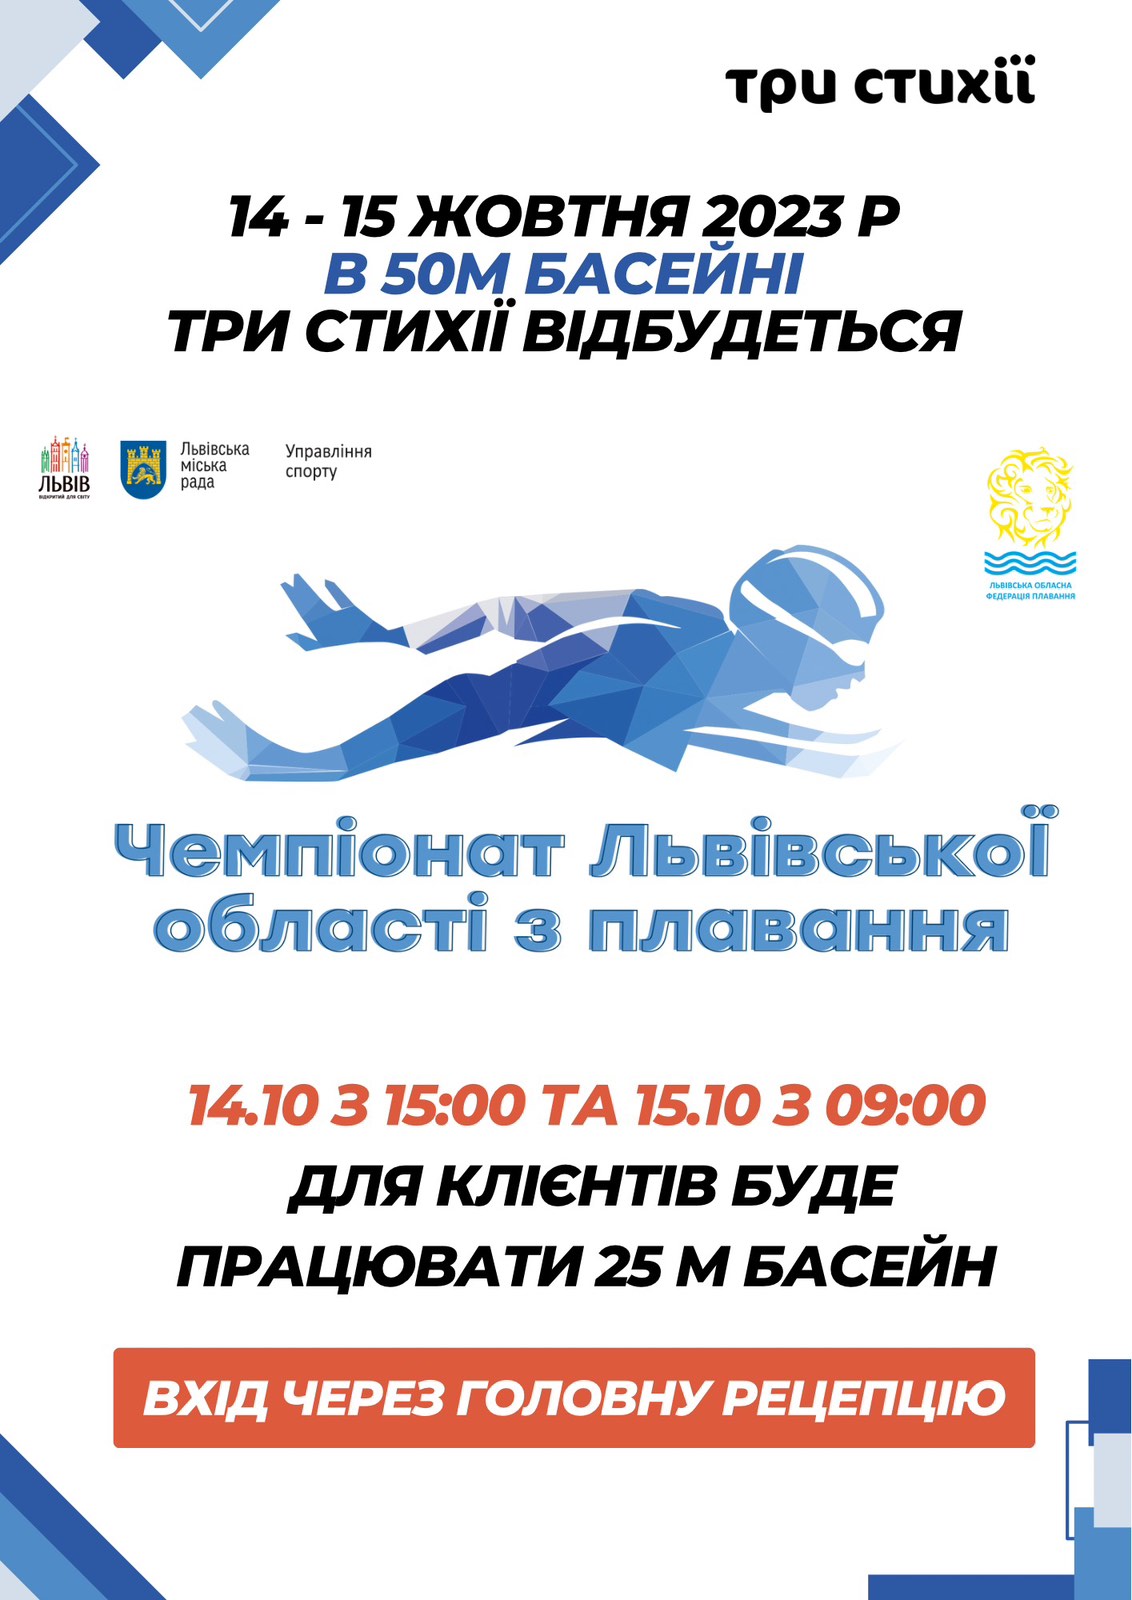 14 - 15 октября в 50 м бассейне "ТРИ СТУХИИ" состоится Чемпионат Львовской области по плаванию